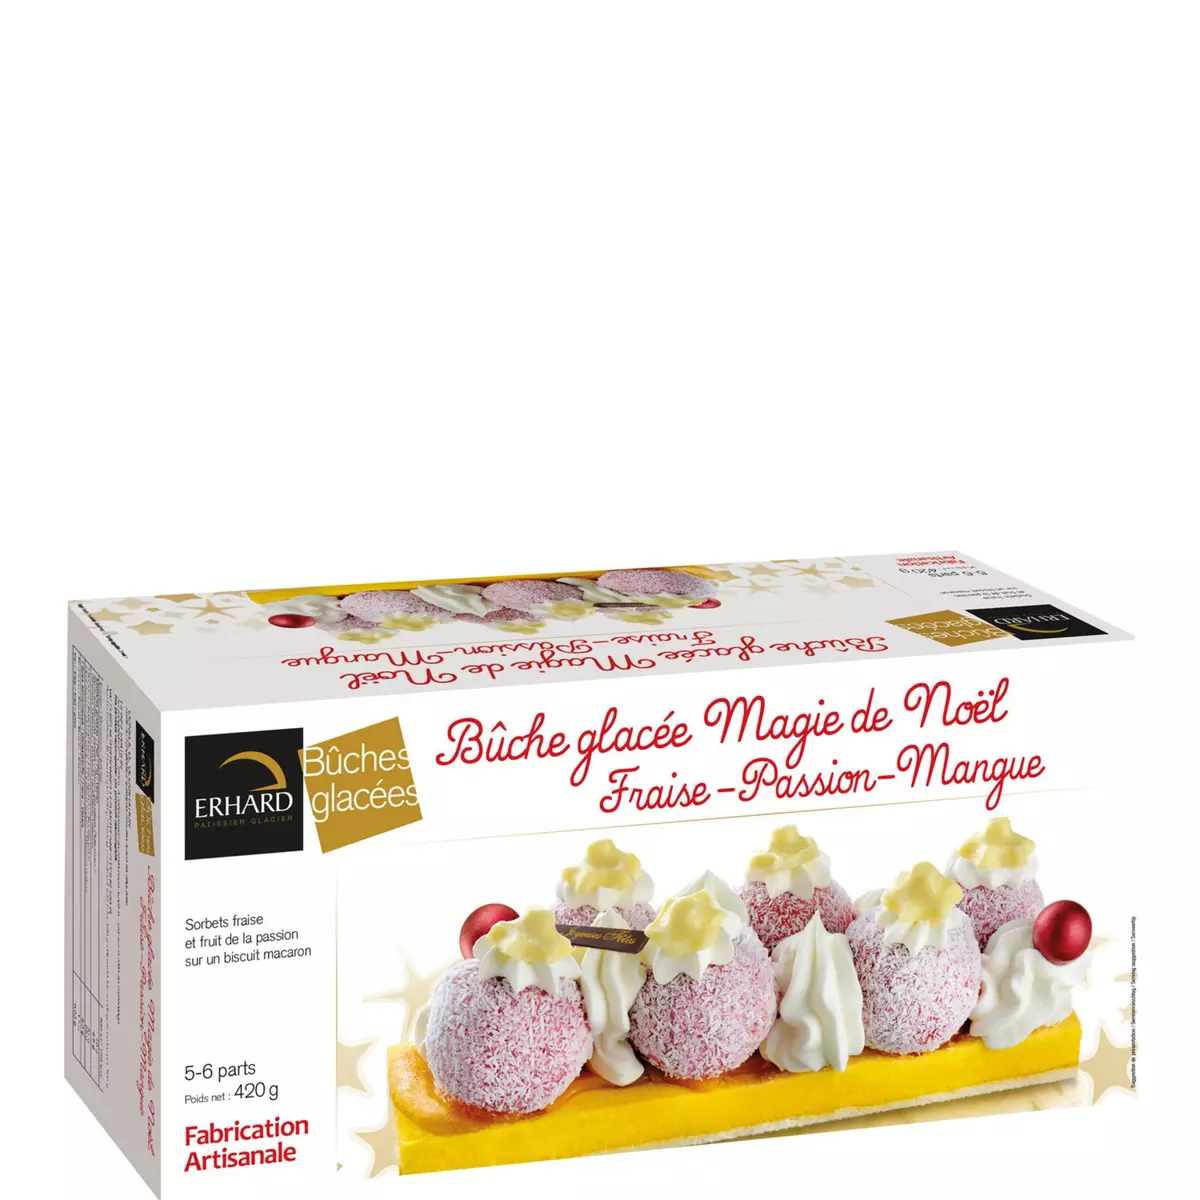 EHRARD Bûche glacée Magie de Noël fraise passion mangue 5-6 parts 420g